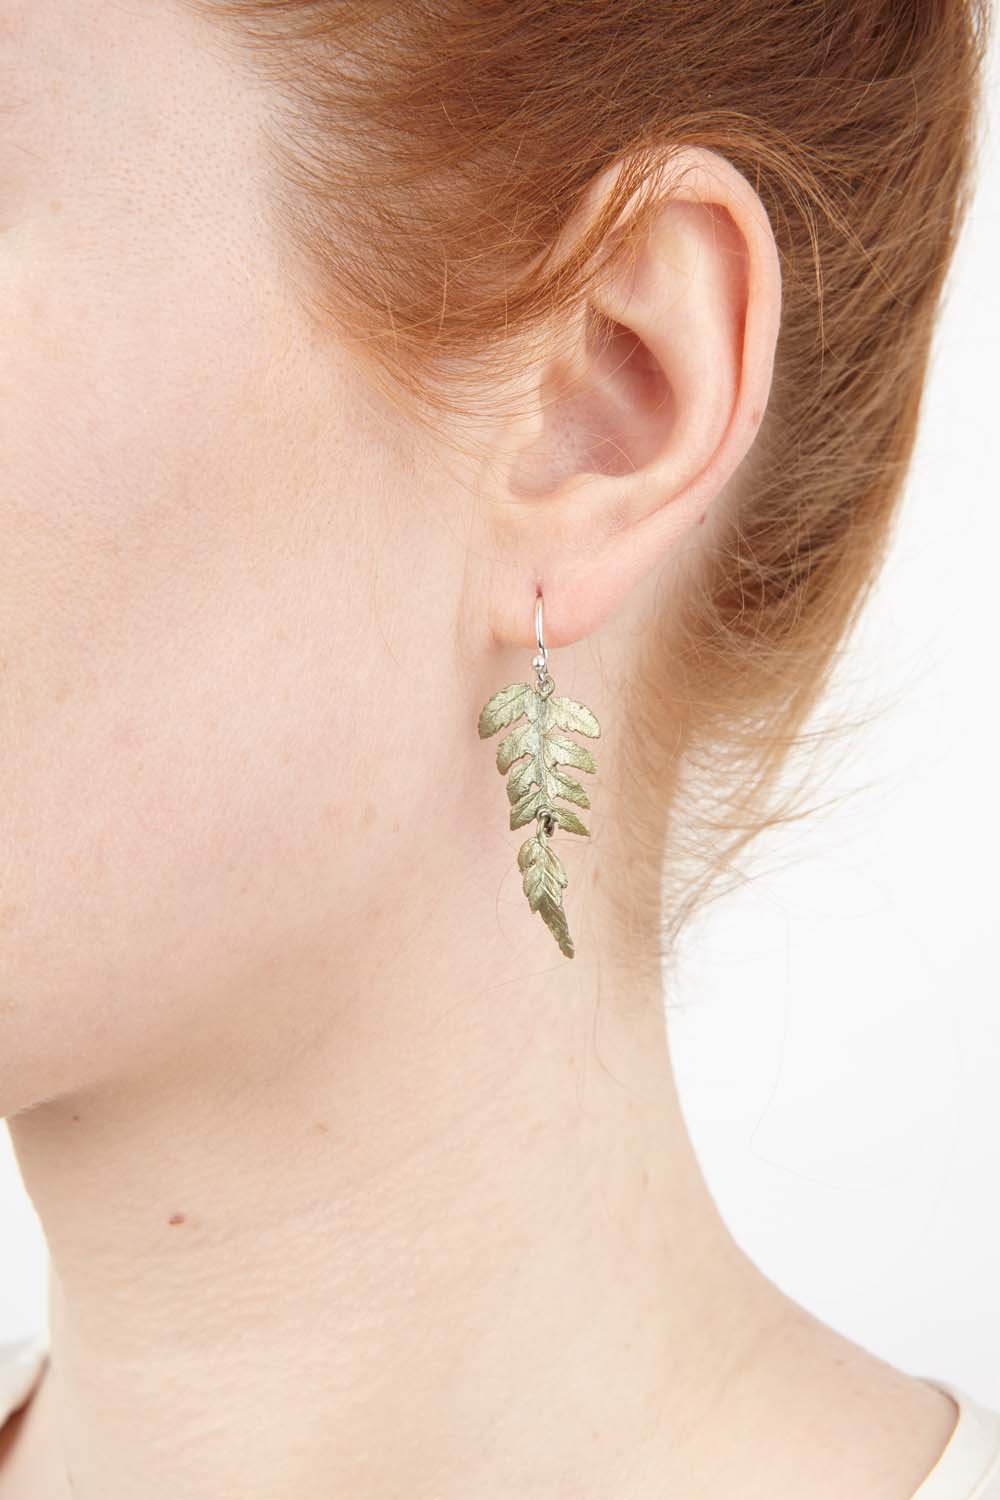 Fern Earrings - Large Single Leaf Wire